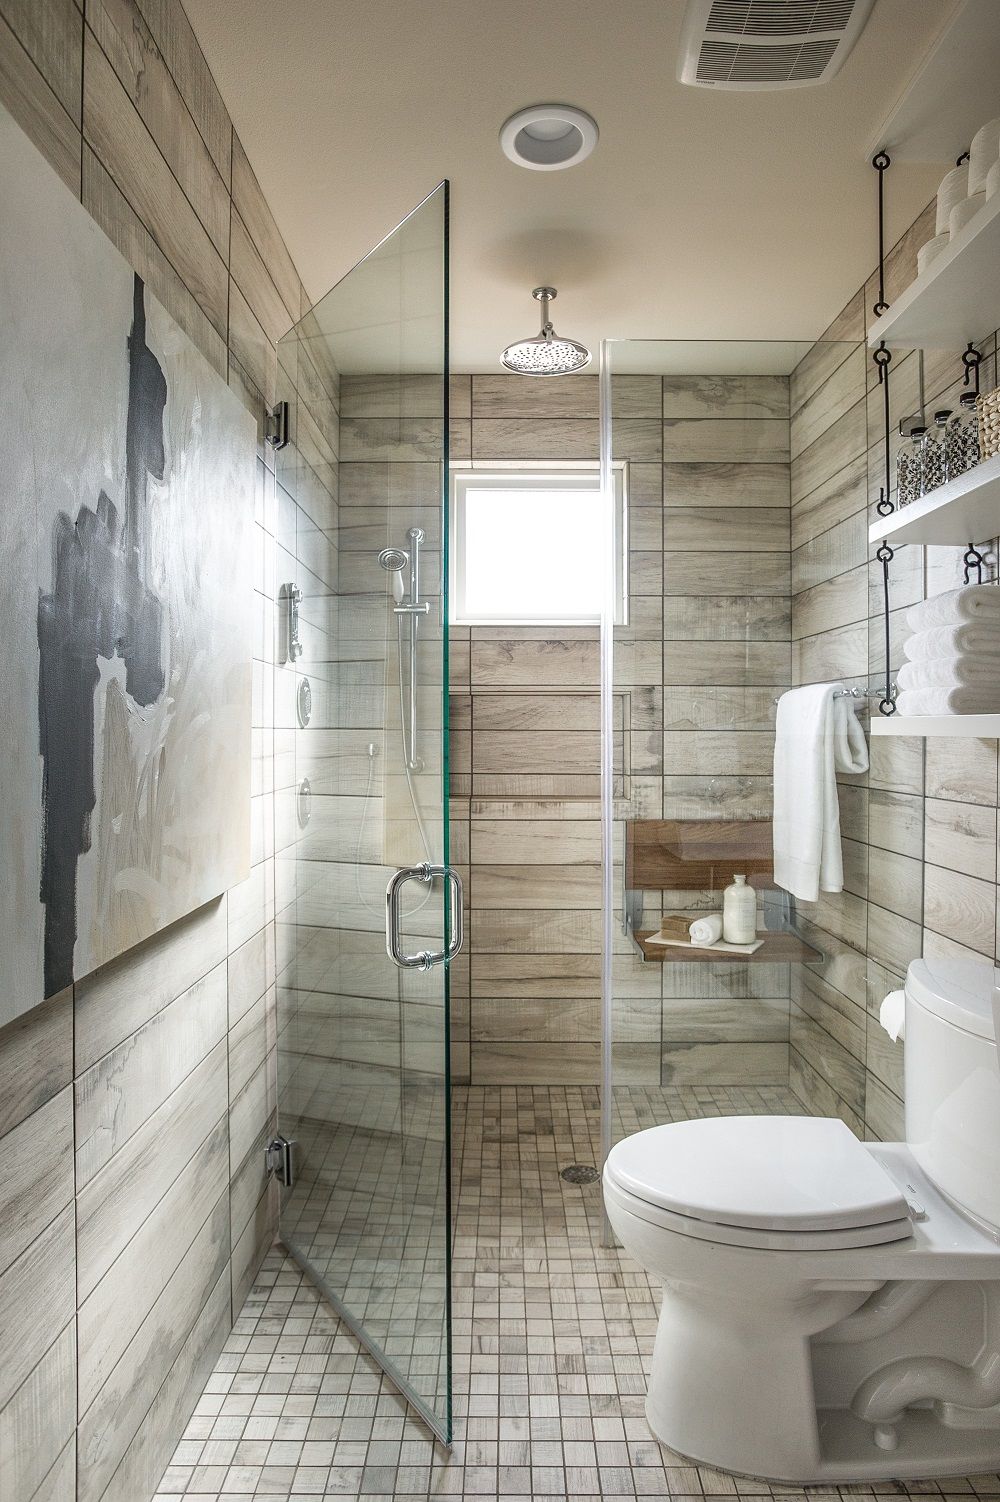 Để tạo ra một phòng tắm nhỏ đẹp, bạn không cần phải có diện tích lớn. Với những ý tưởng thiết kế phòng tắm nhỏ thông minh và sáng tạo, bạn có thể biến không gian nhỏ bé của mình thành một phòng tắm tiện nghi và đẹp mắt.